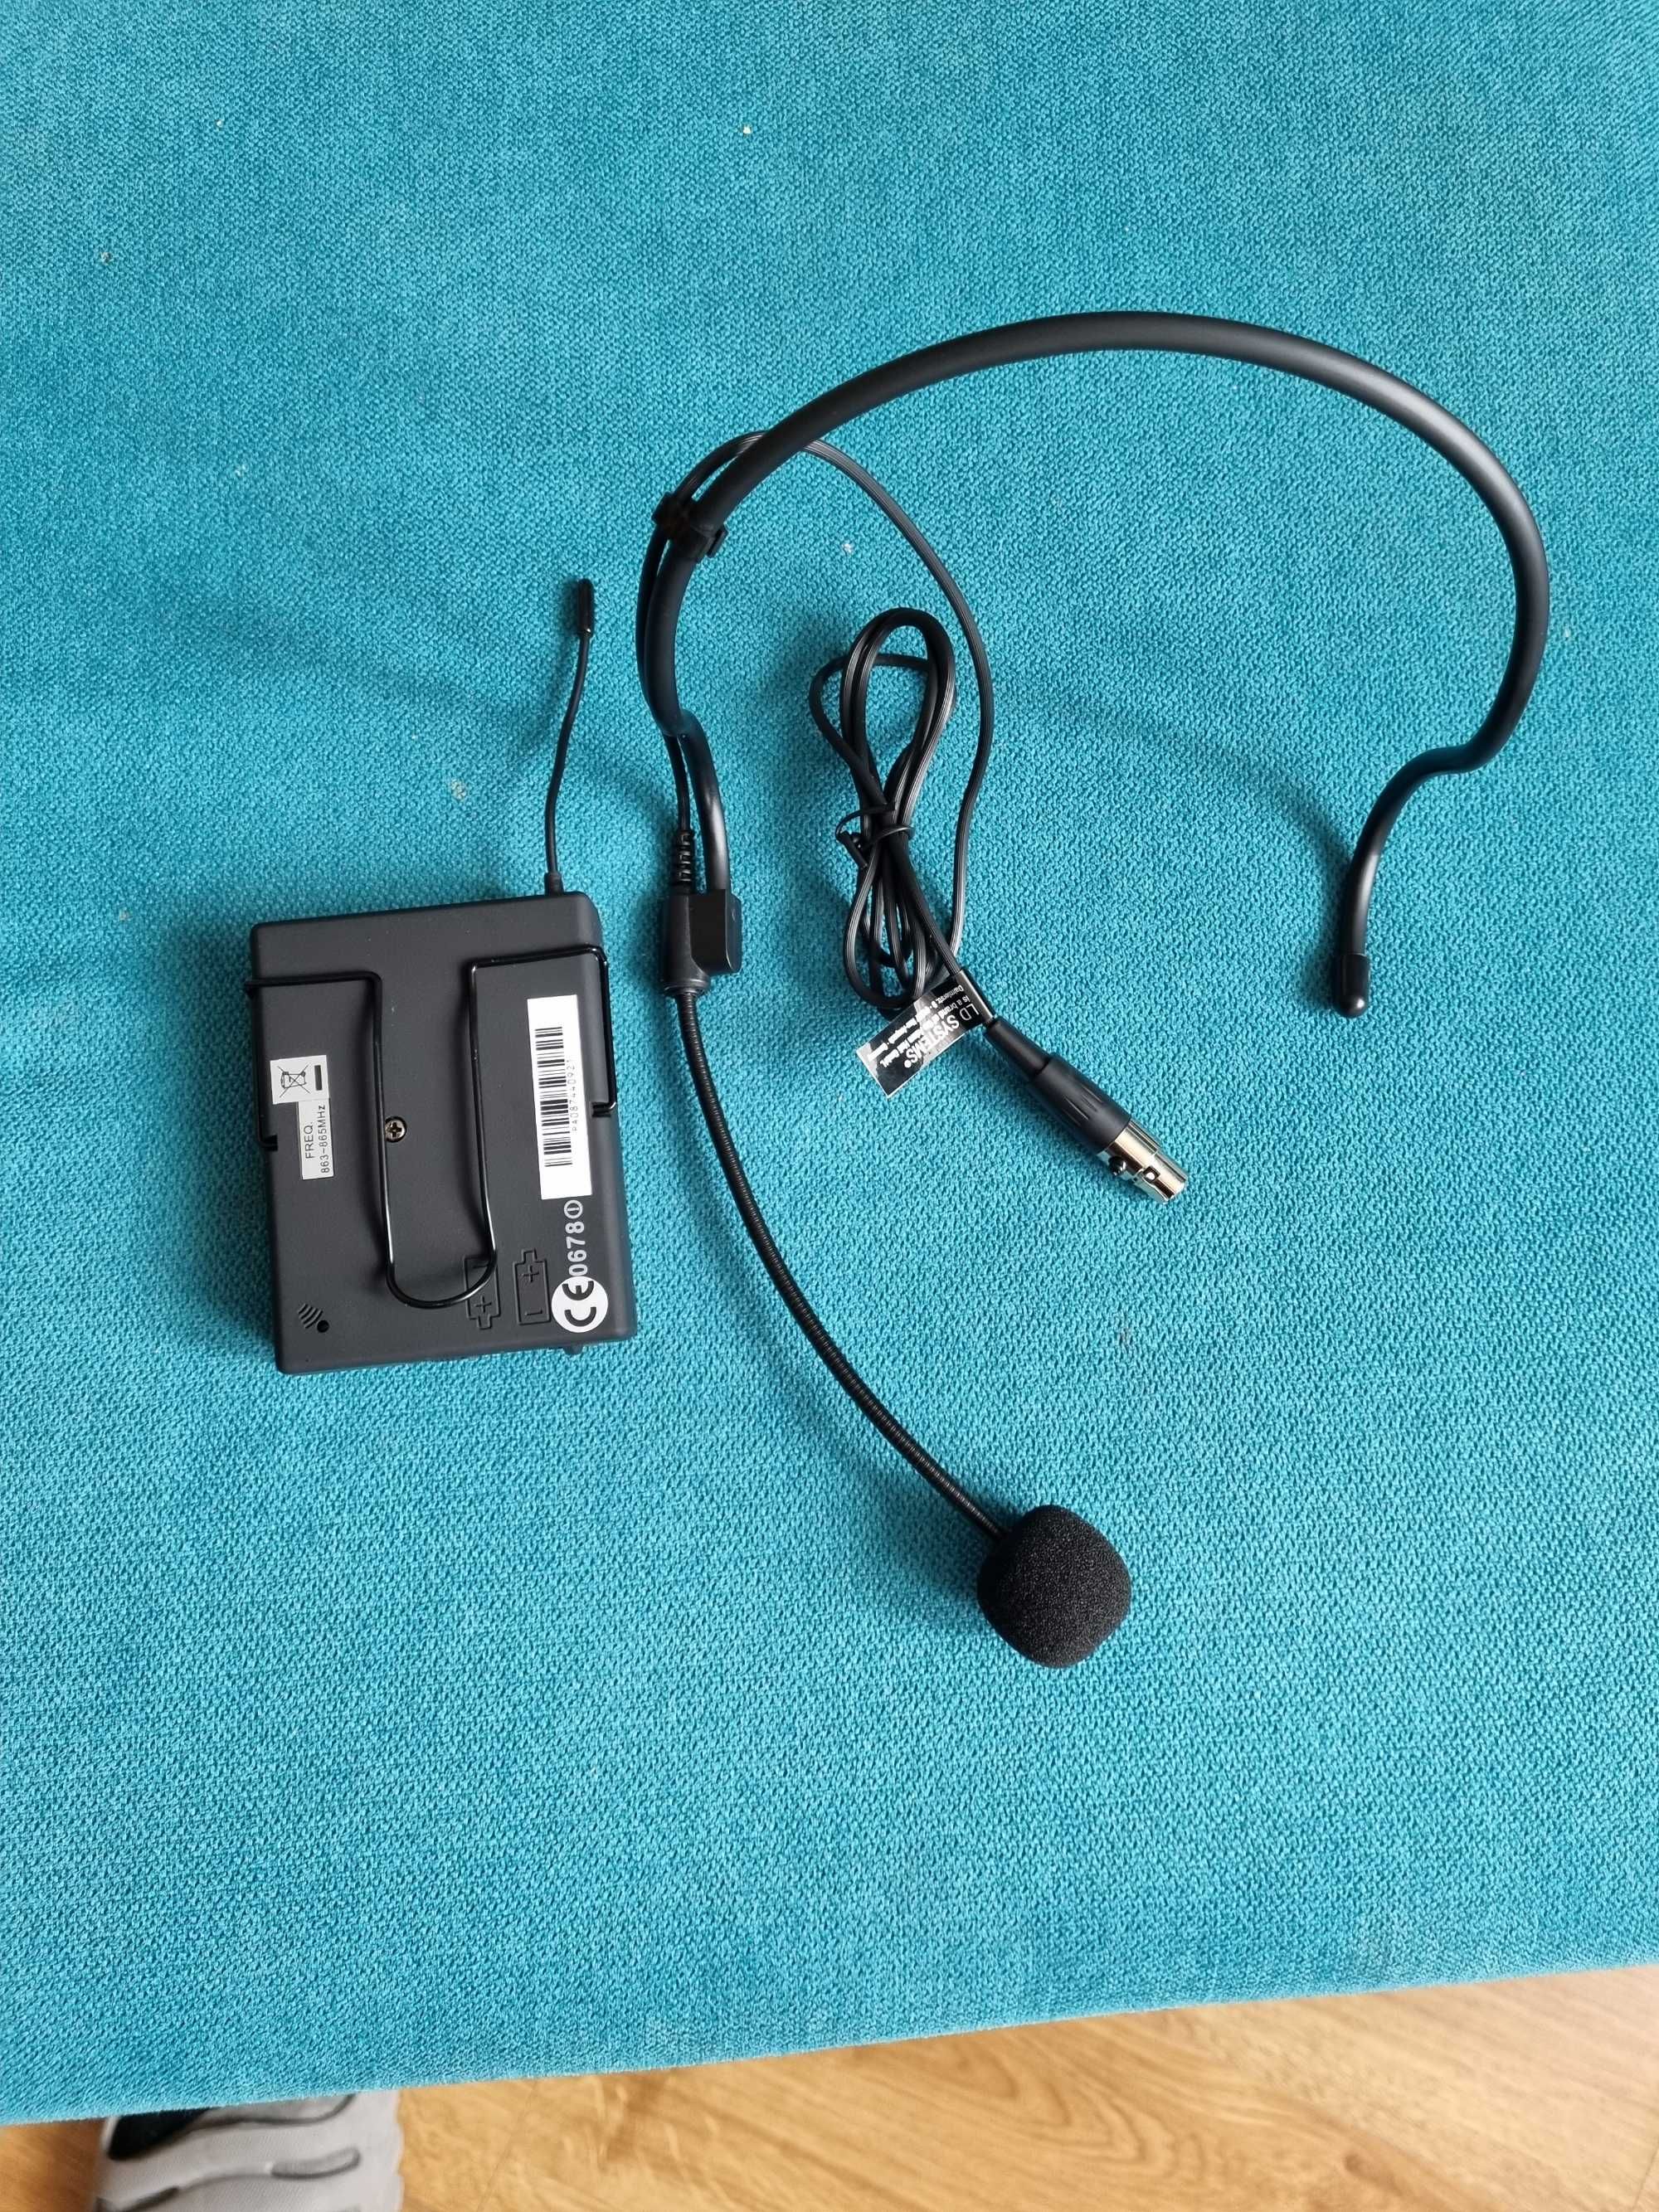 Ld systems (nowe) nadajnik bodypack- mikrofon naglowny 863-865 Mhz